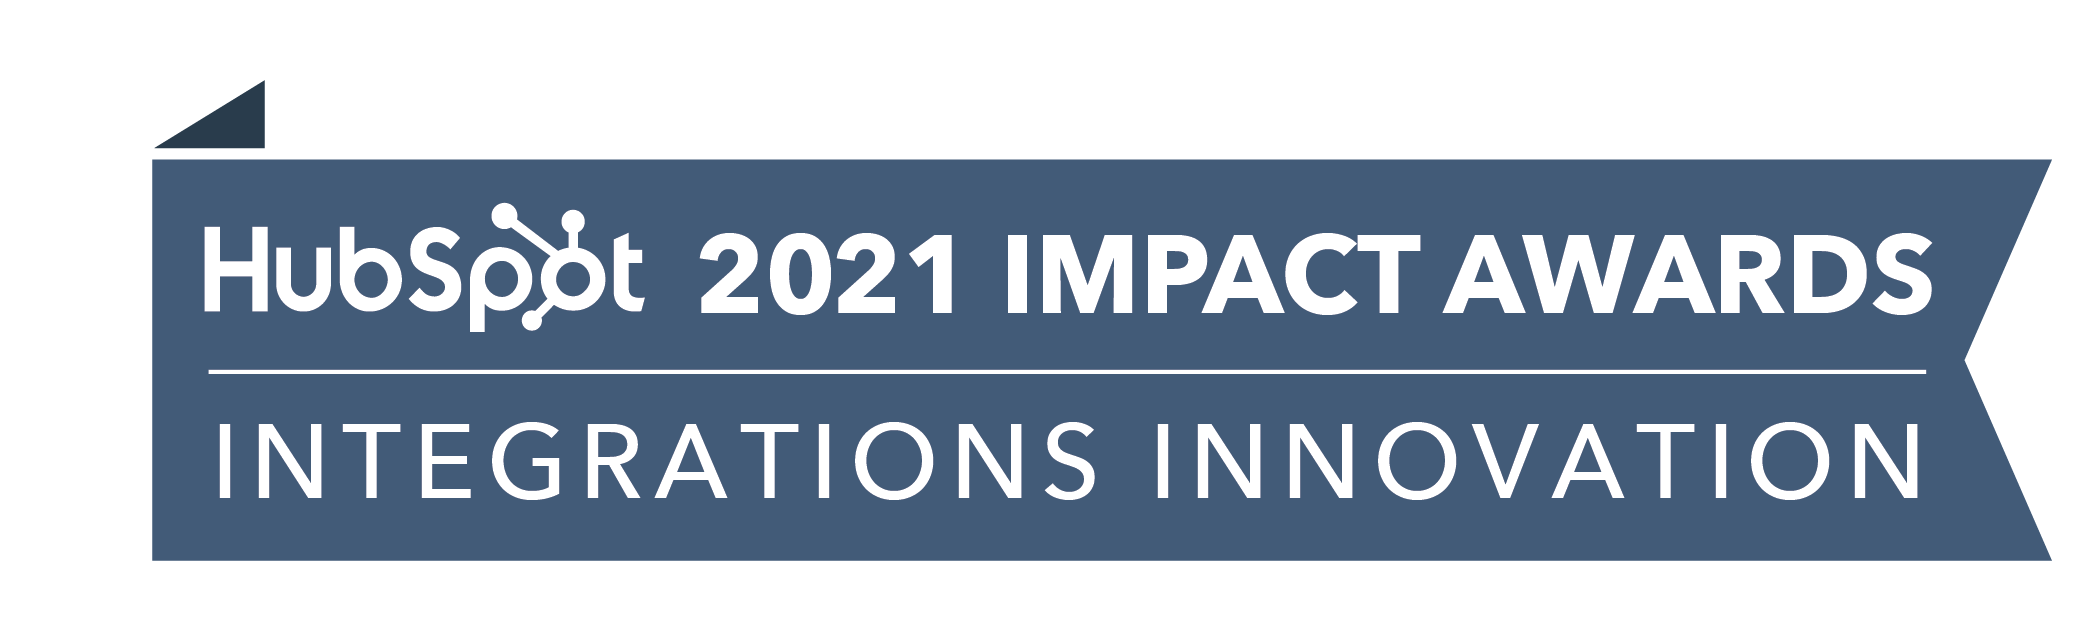 HubSpot_ImpactAwards_2021_IntegrationsInnov2-2